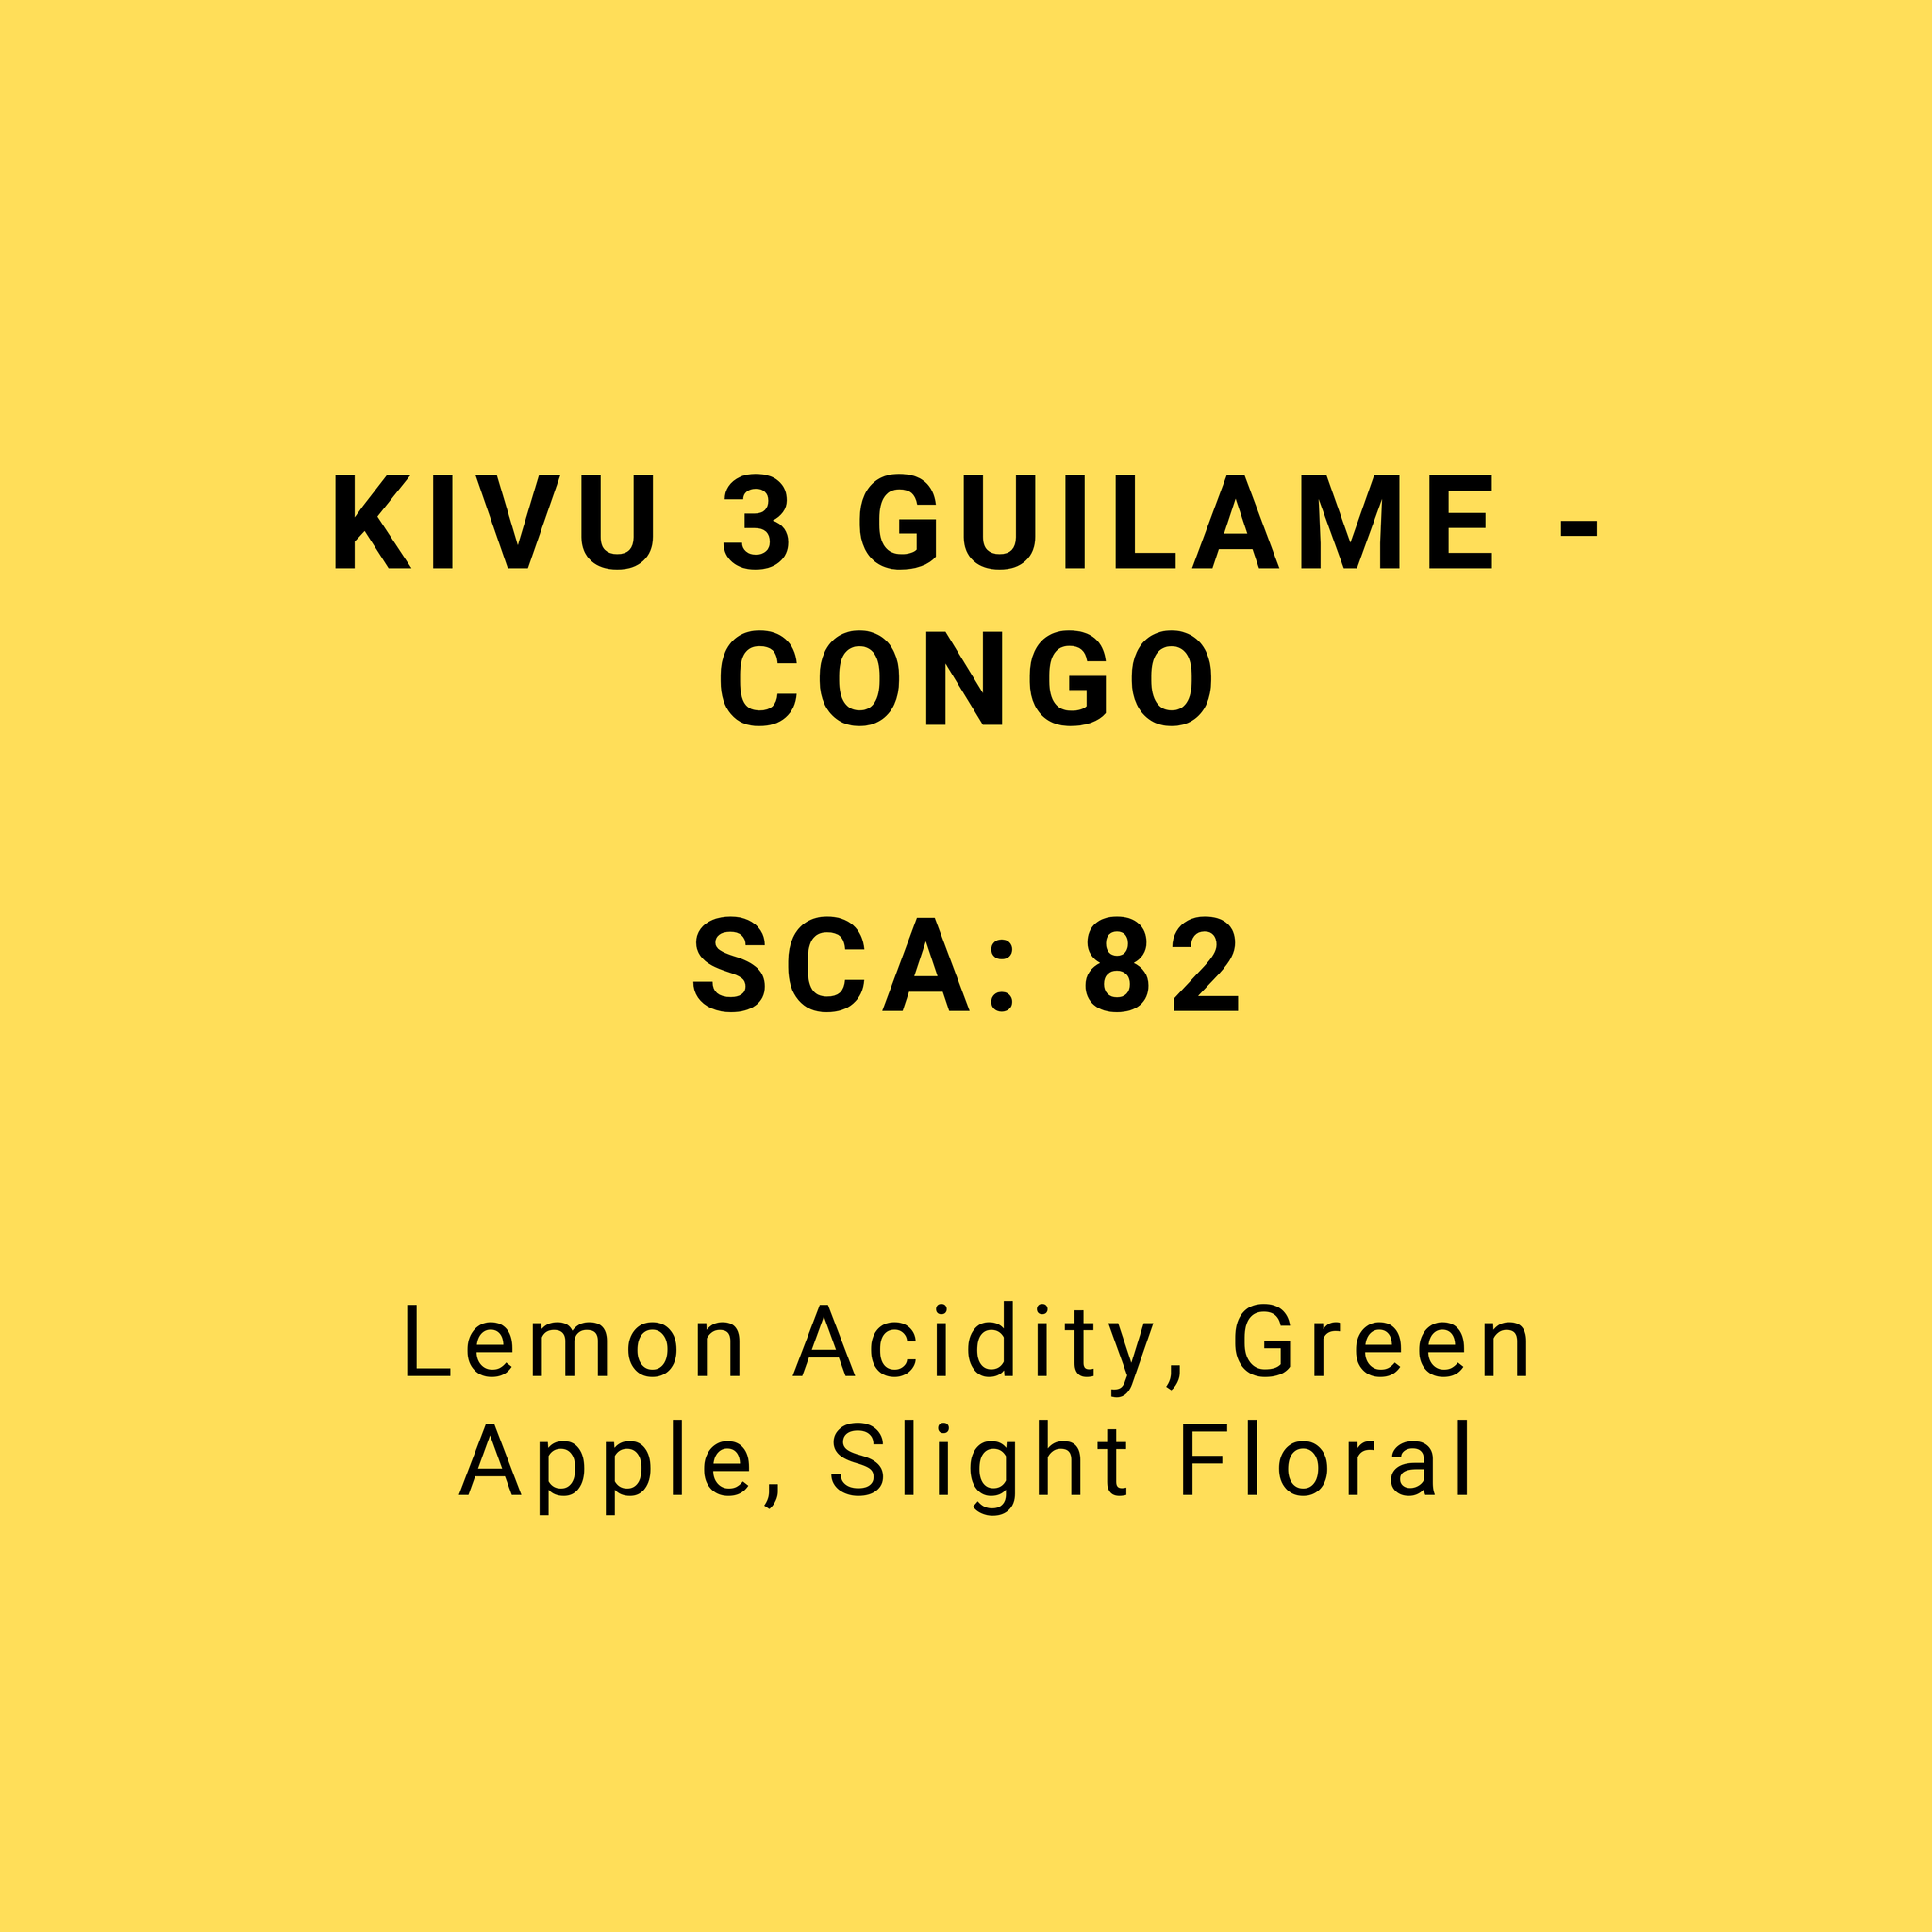 KIVU 3 GUILAME - CONGO